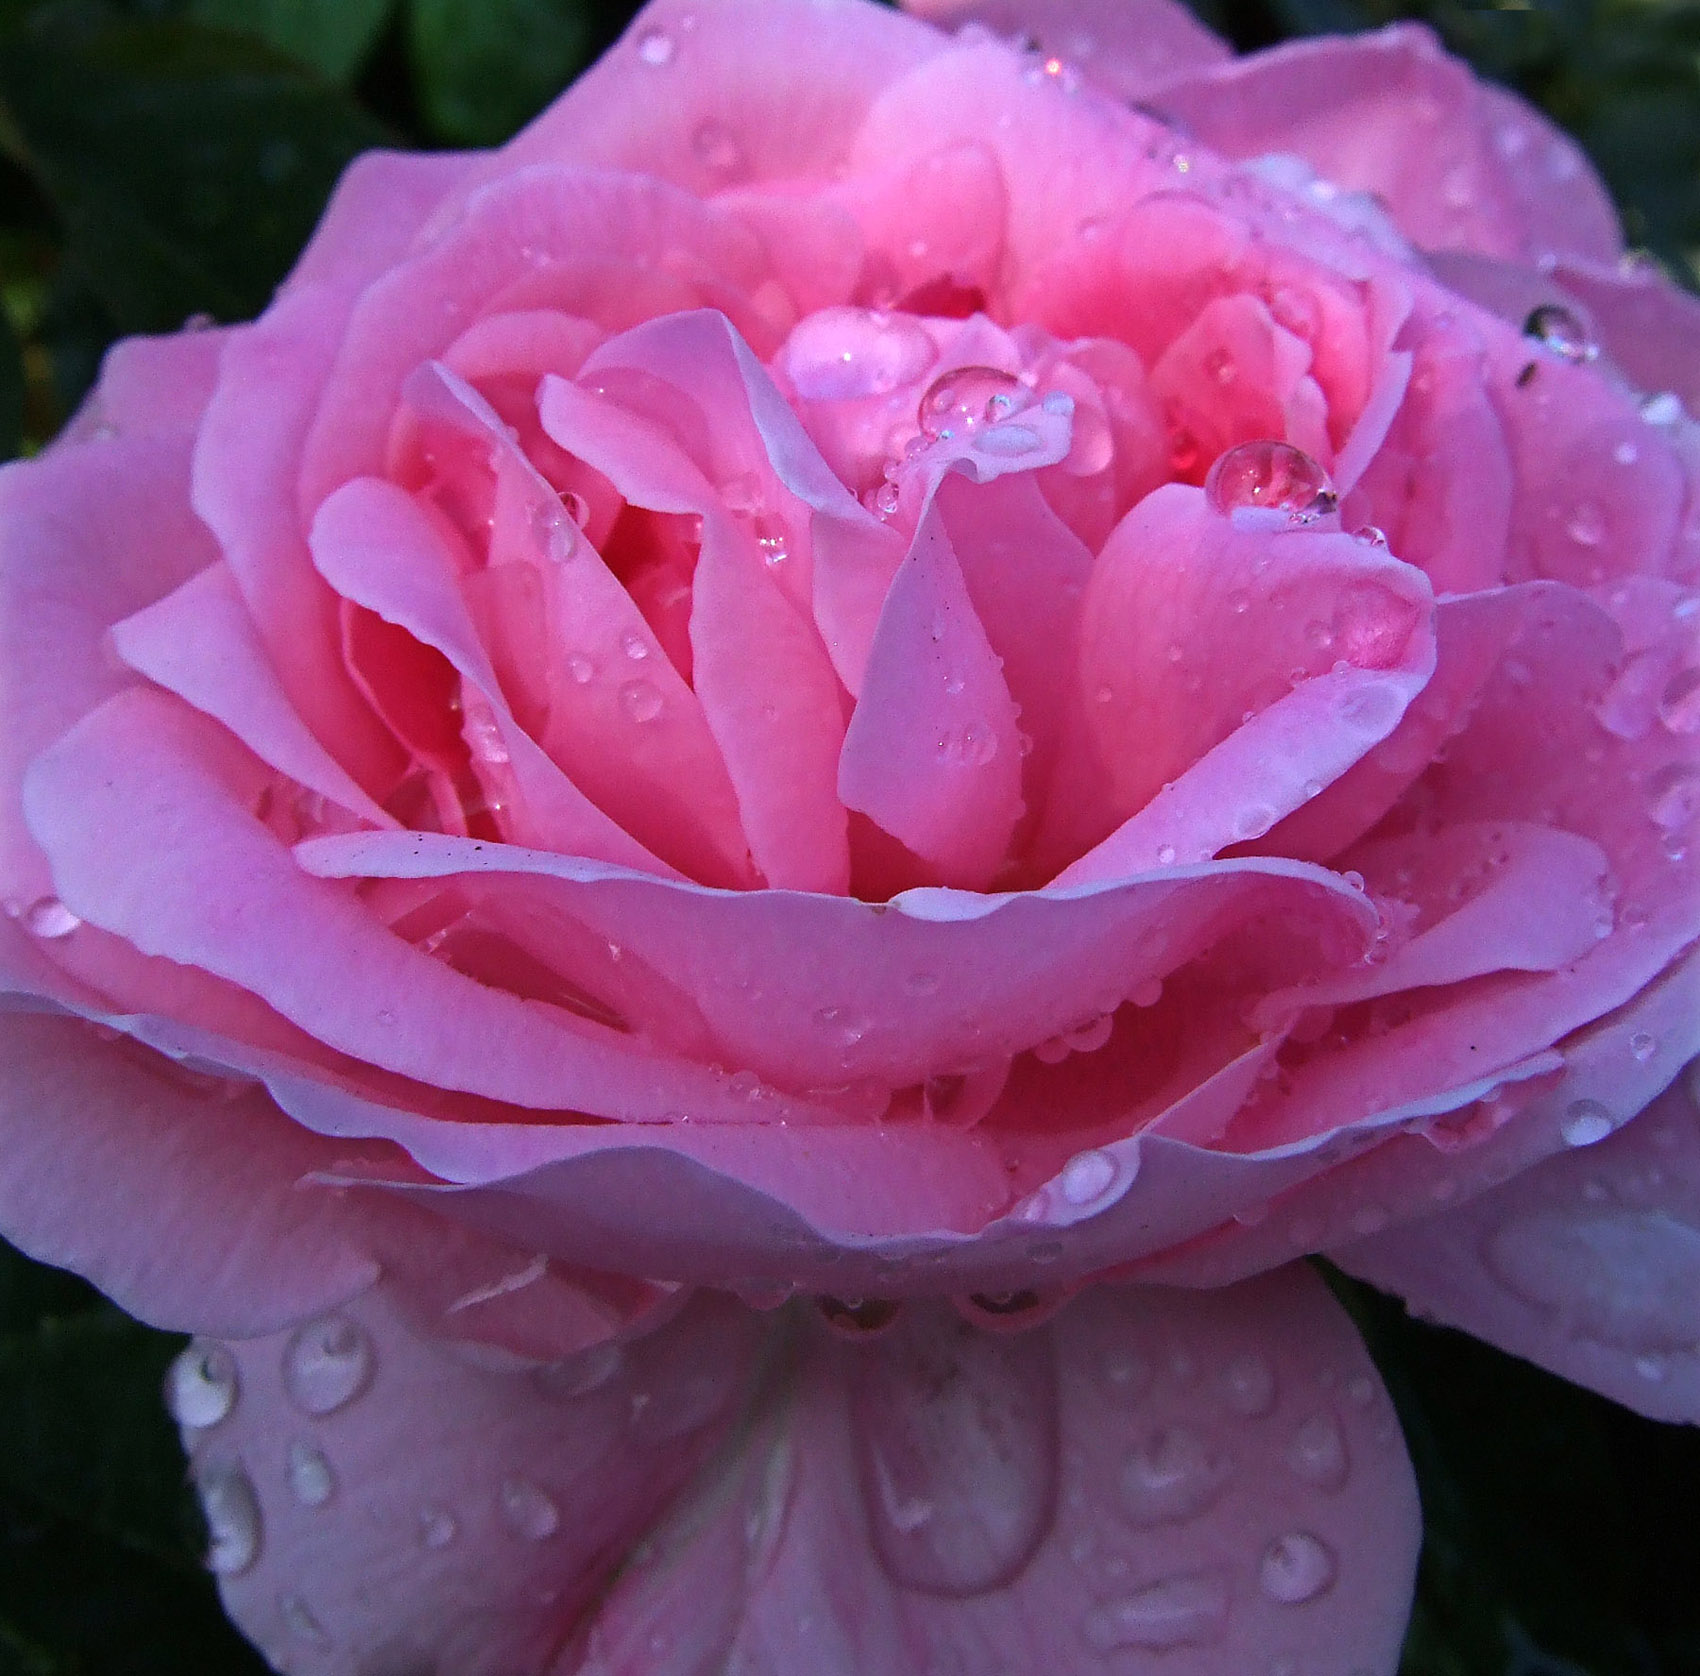 Pink Rose, water droplets -- Fuji F31fd camera